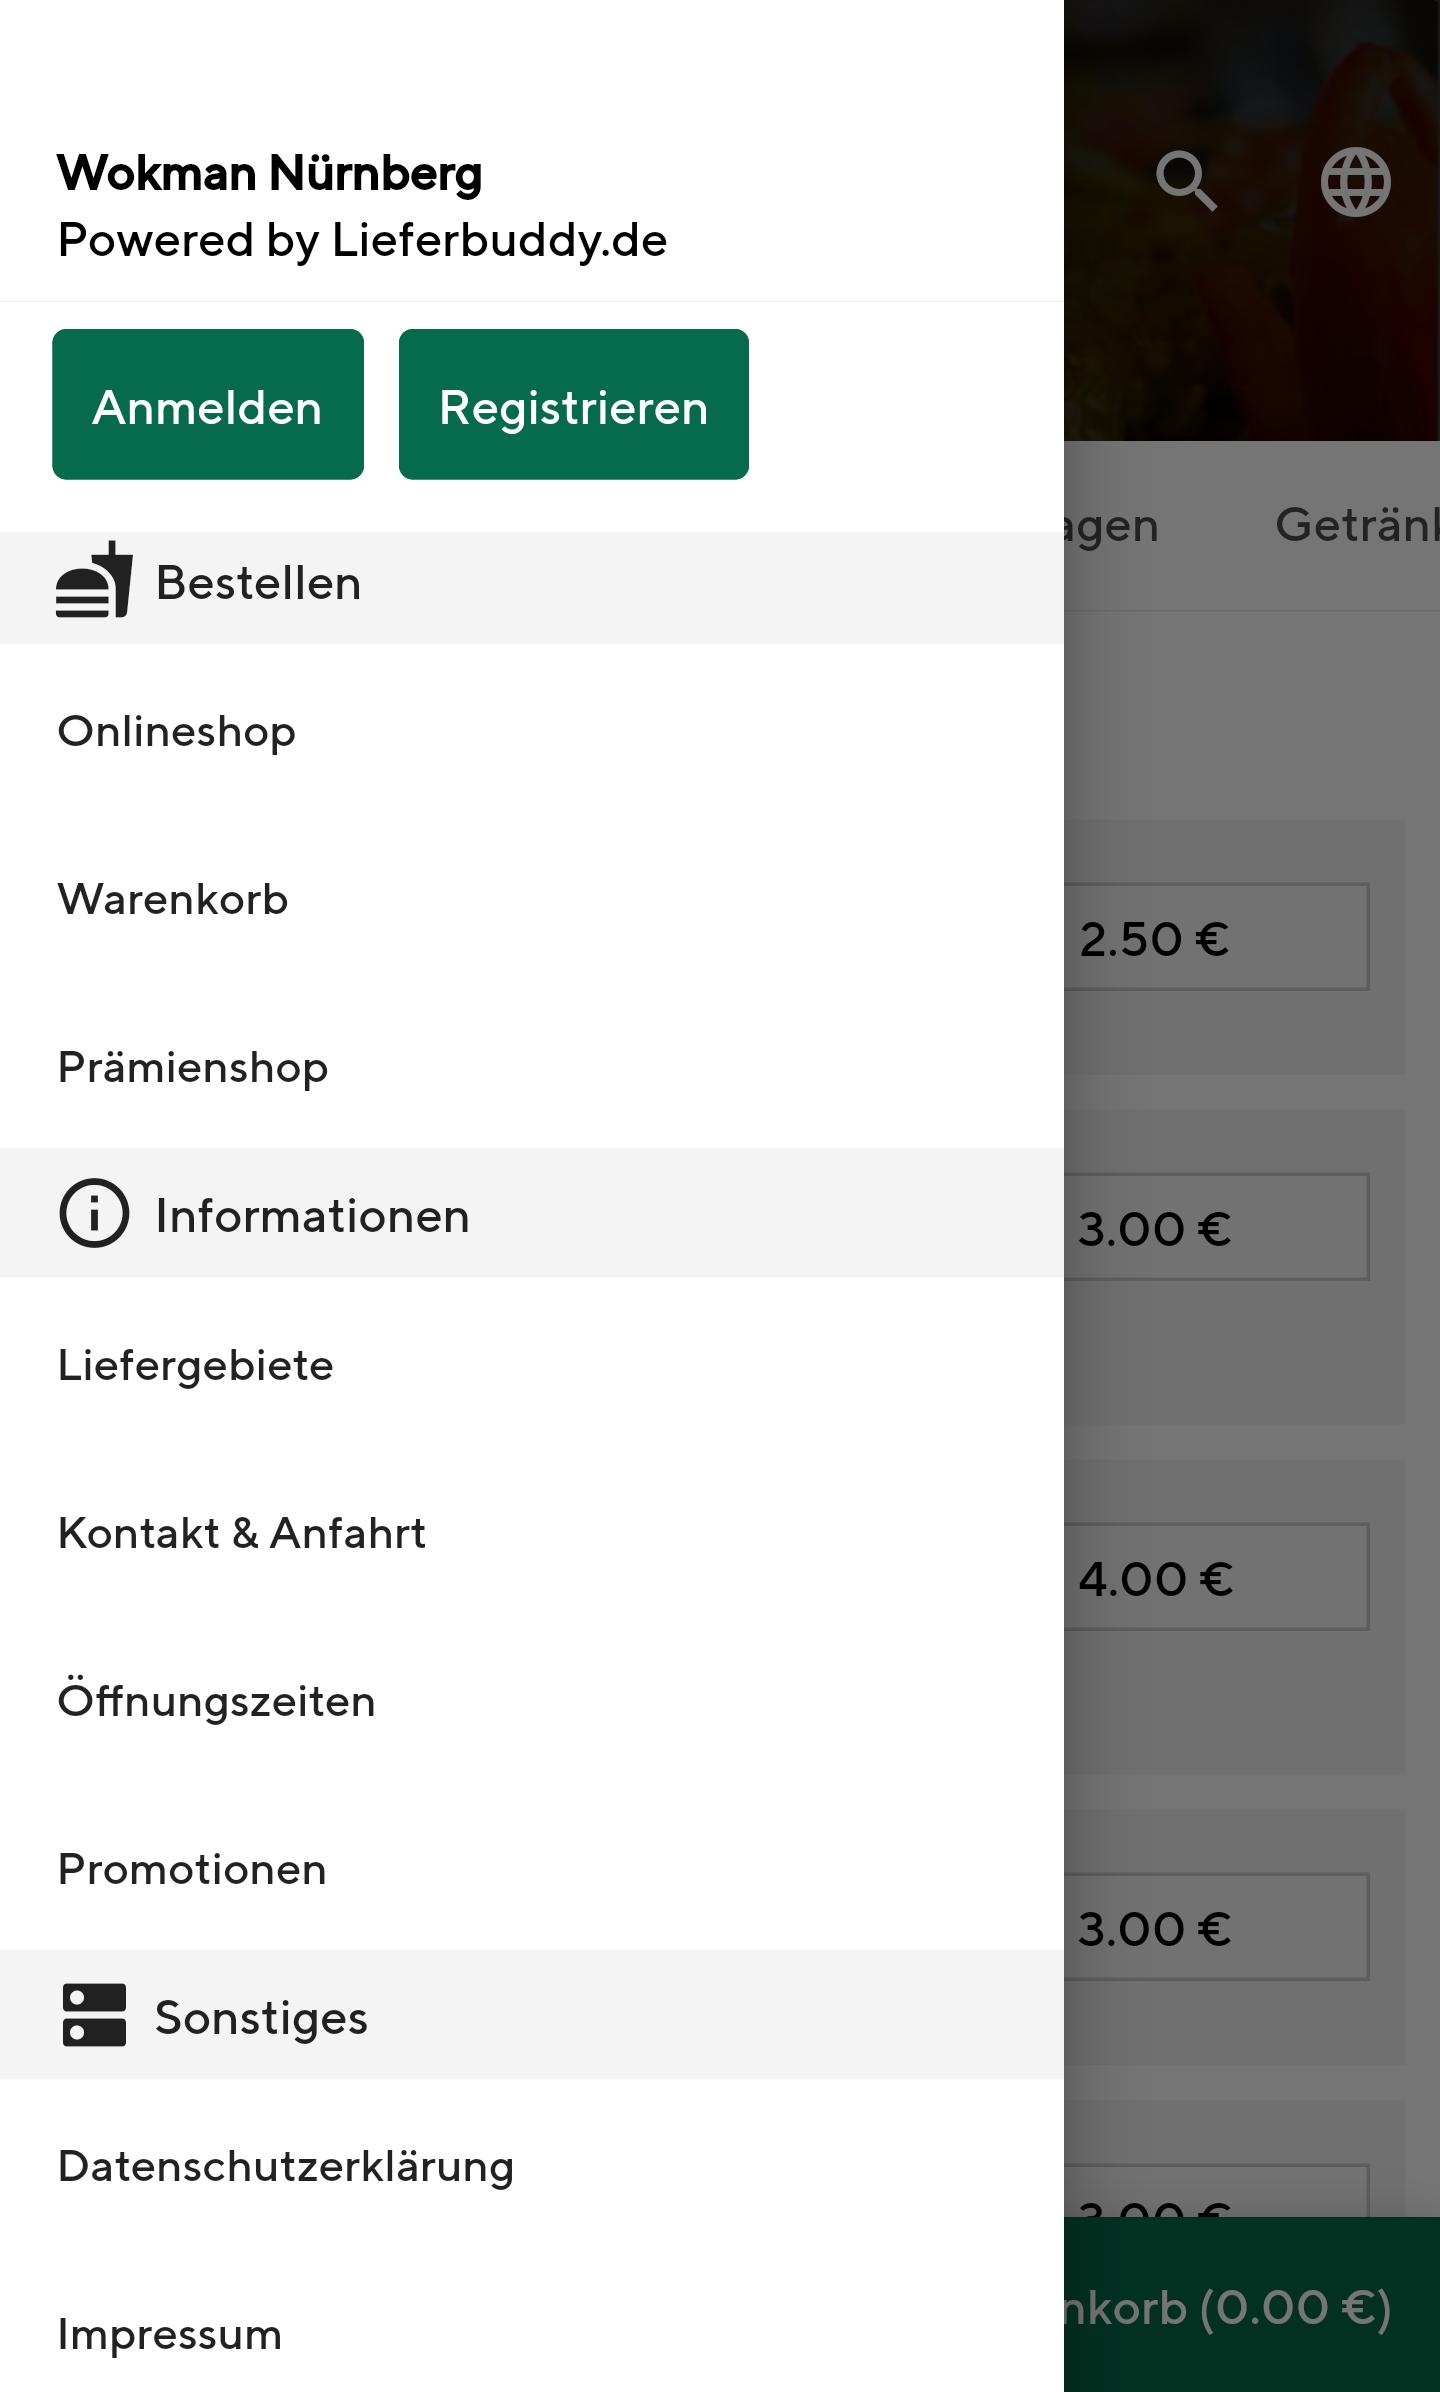 Wokman Nürnberg for Android - APK Download